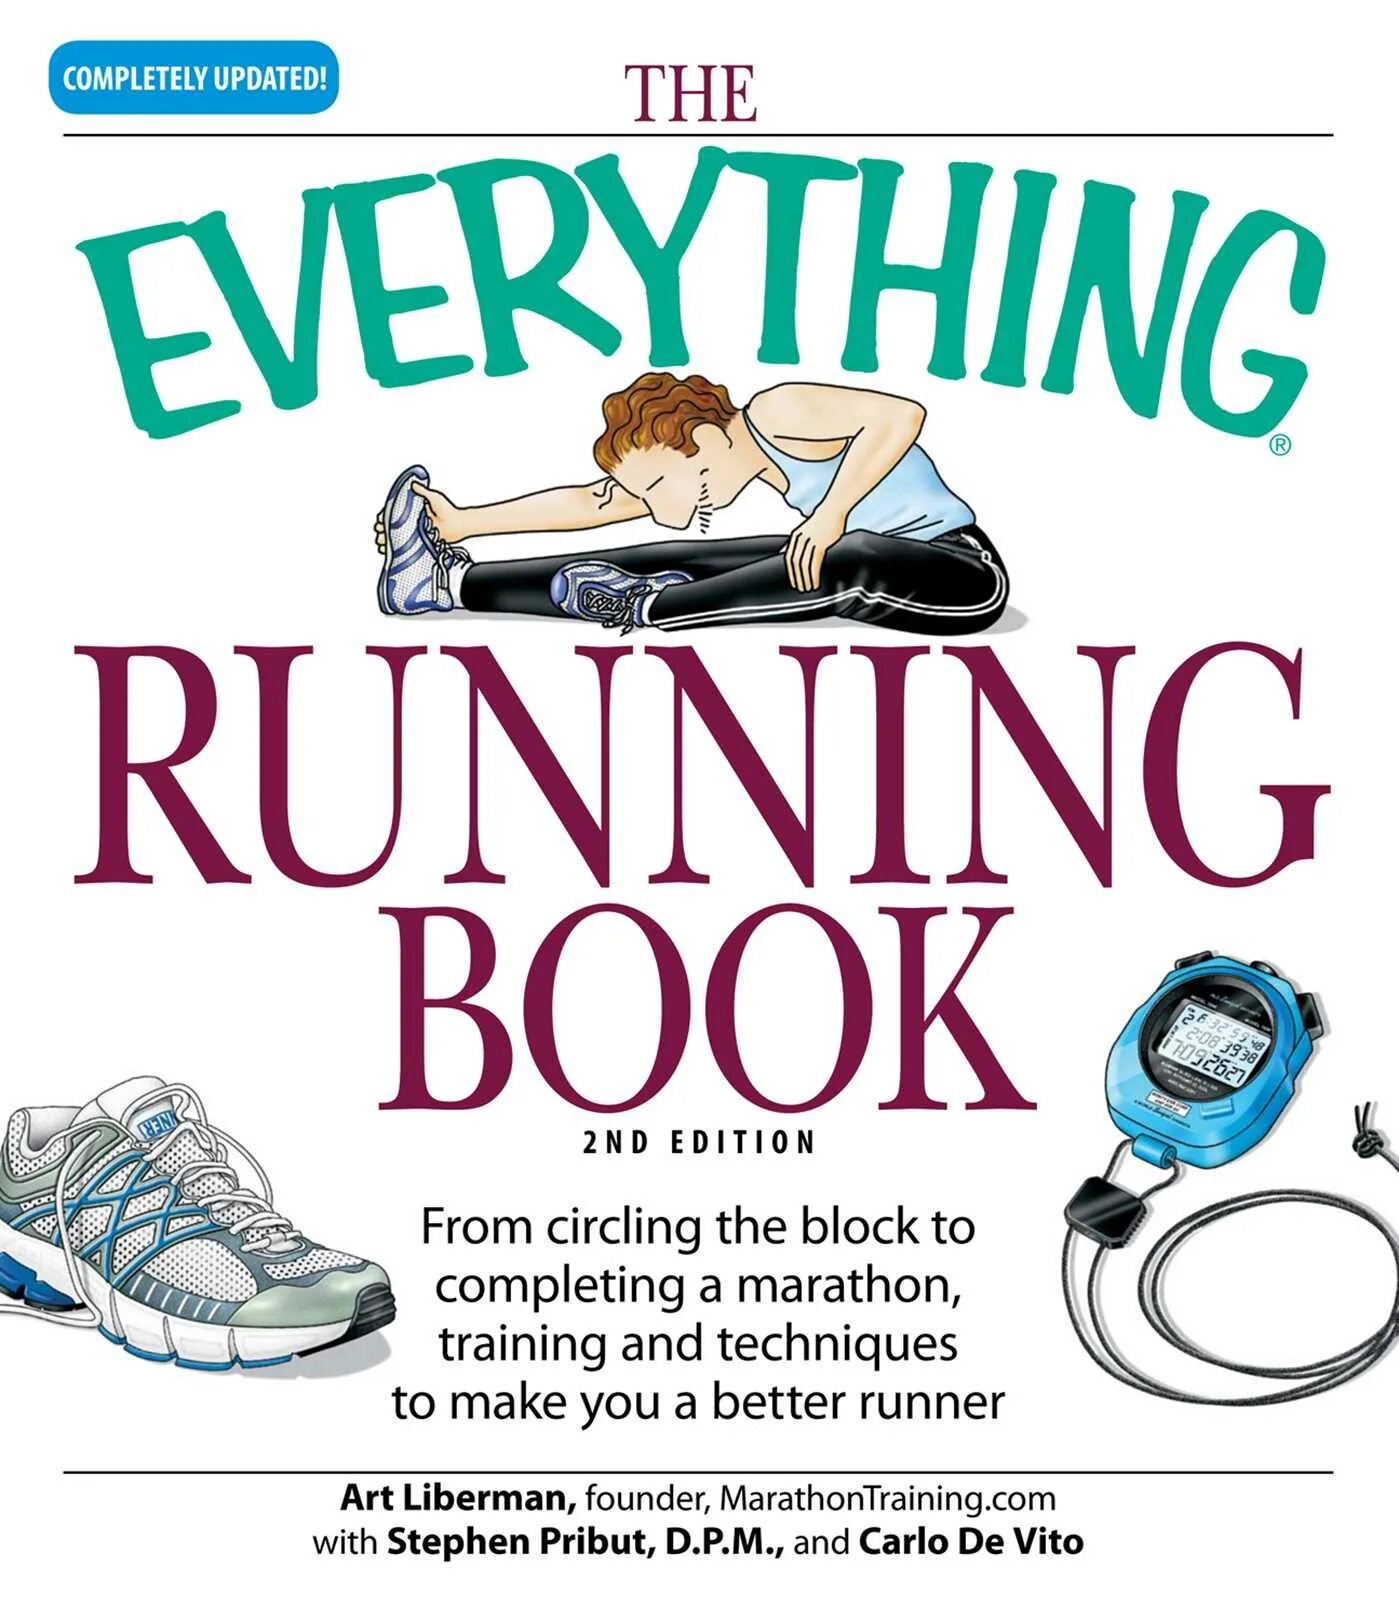 Everything everything книга. The Running book. Books Run.